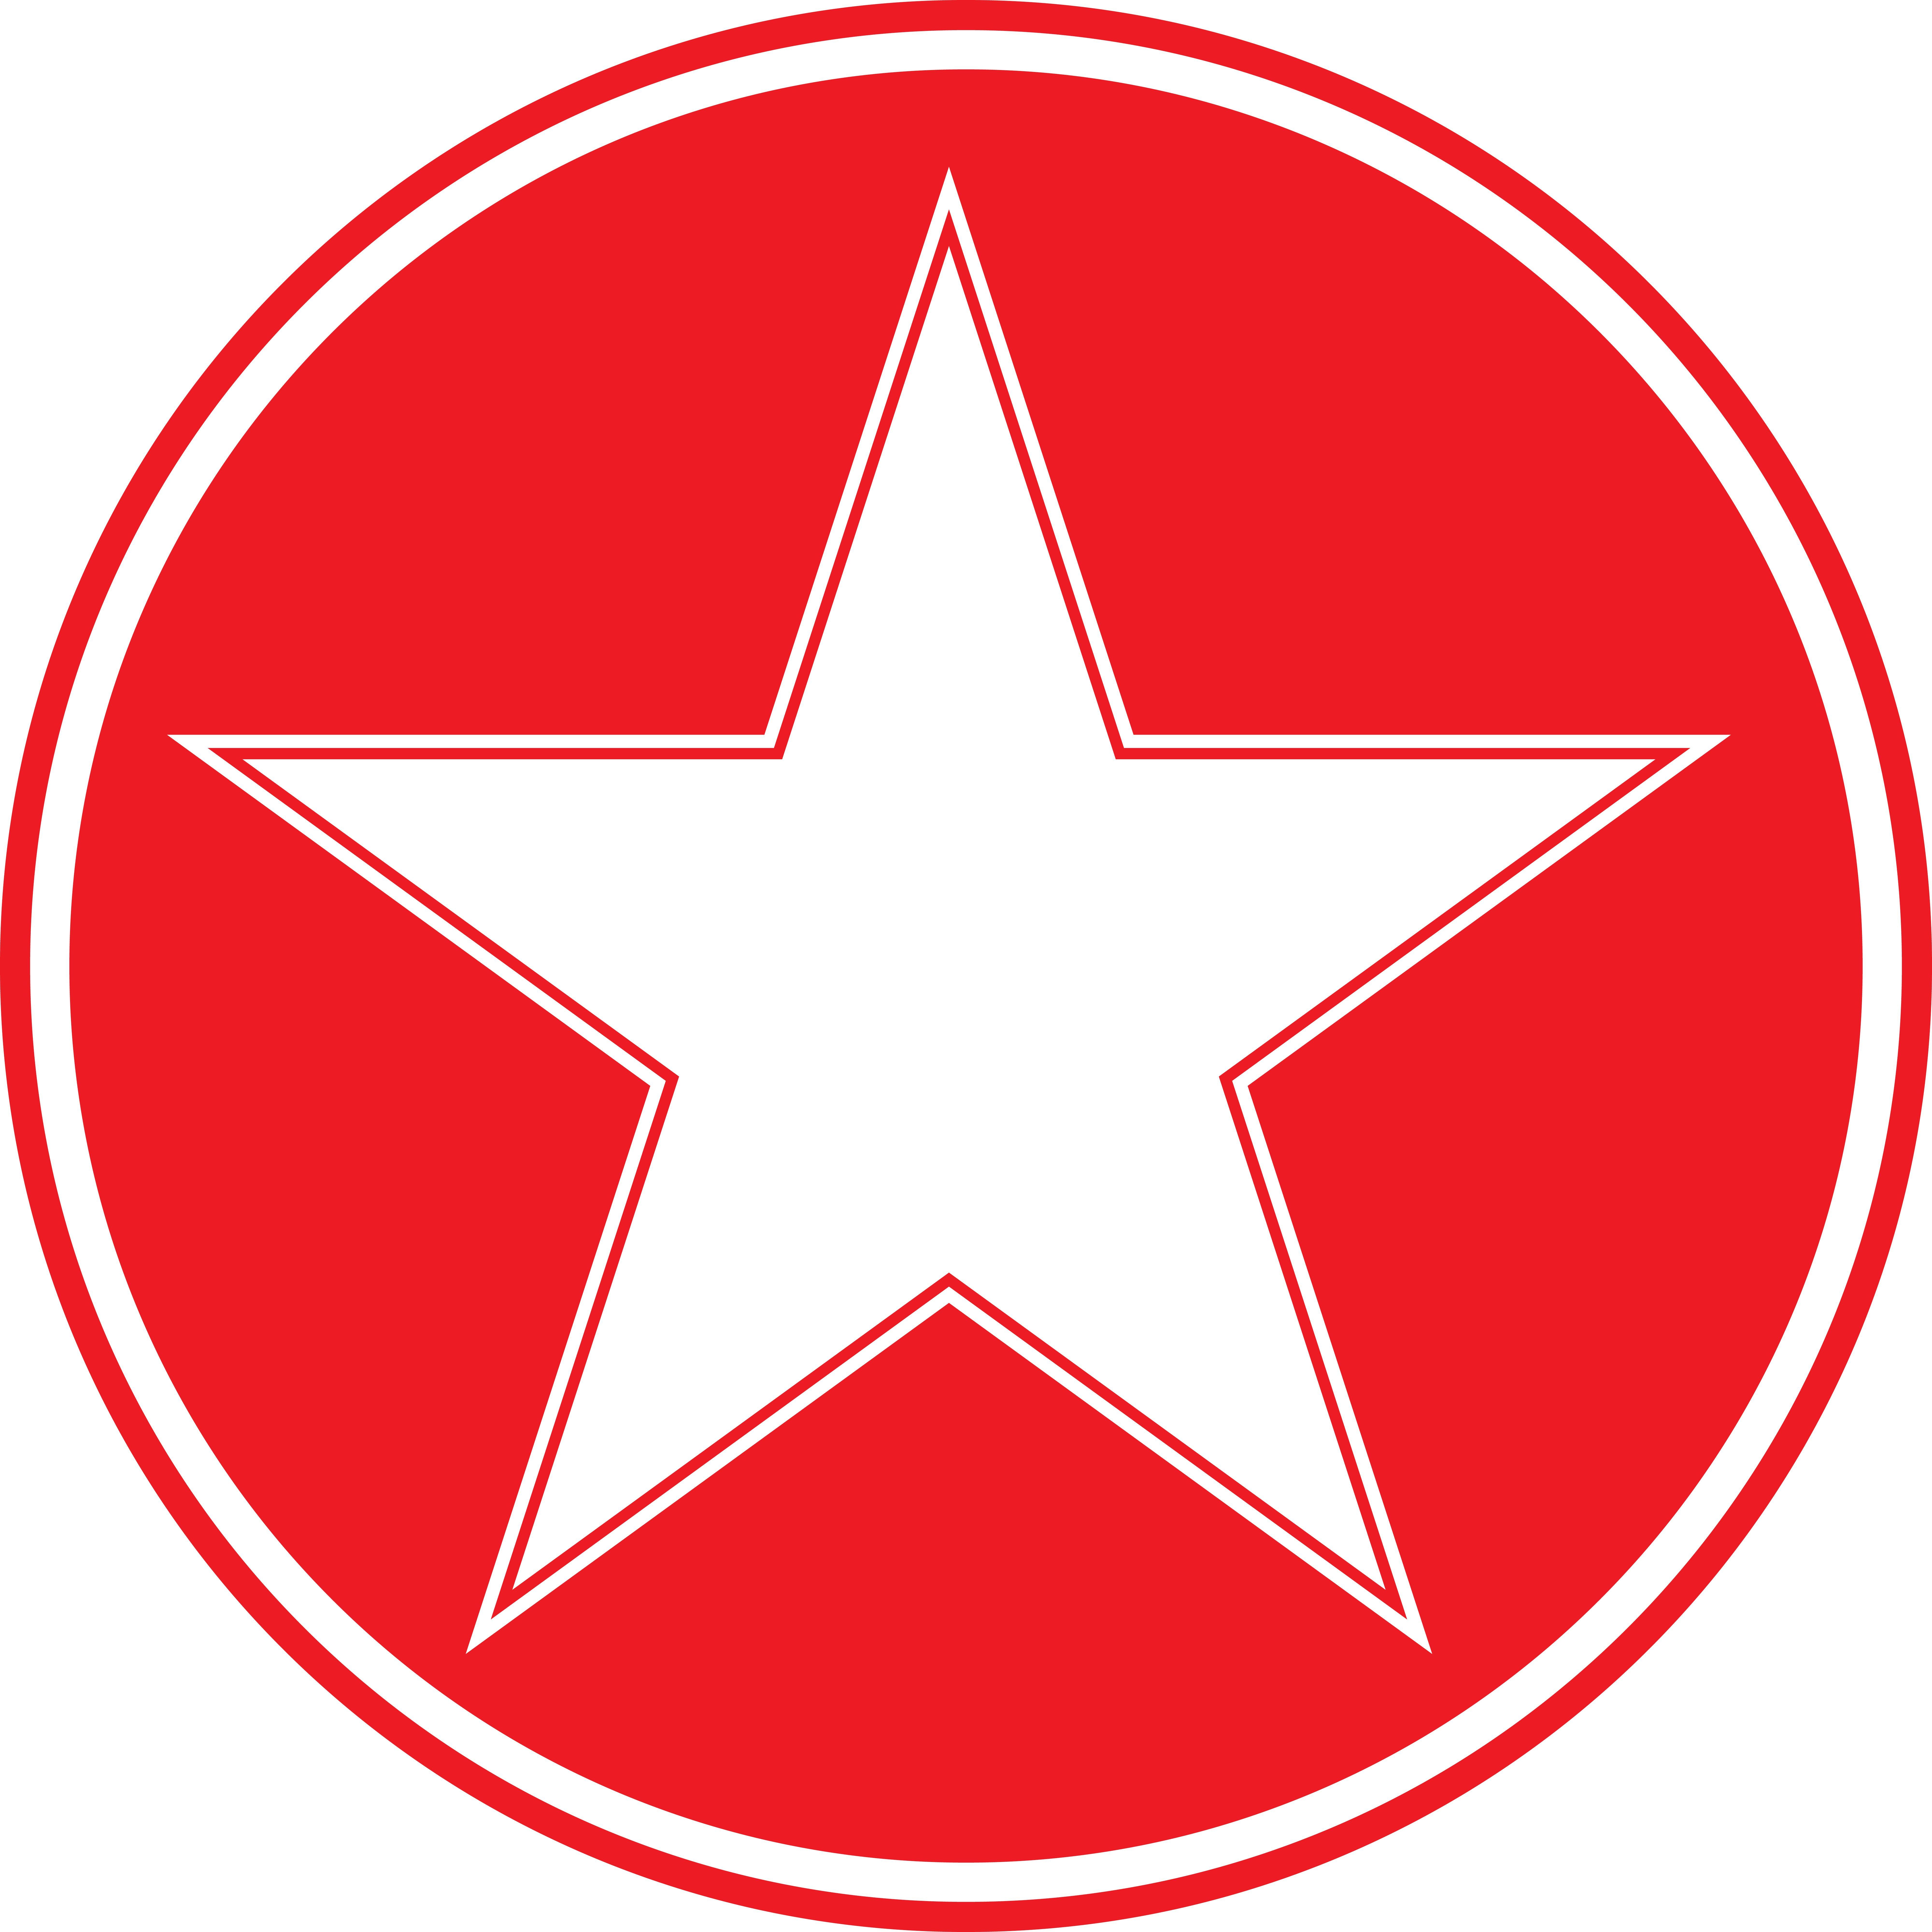 White with Red Circle Logo - Star in circle Logos